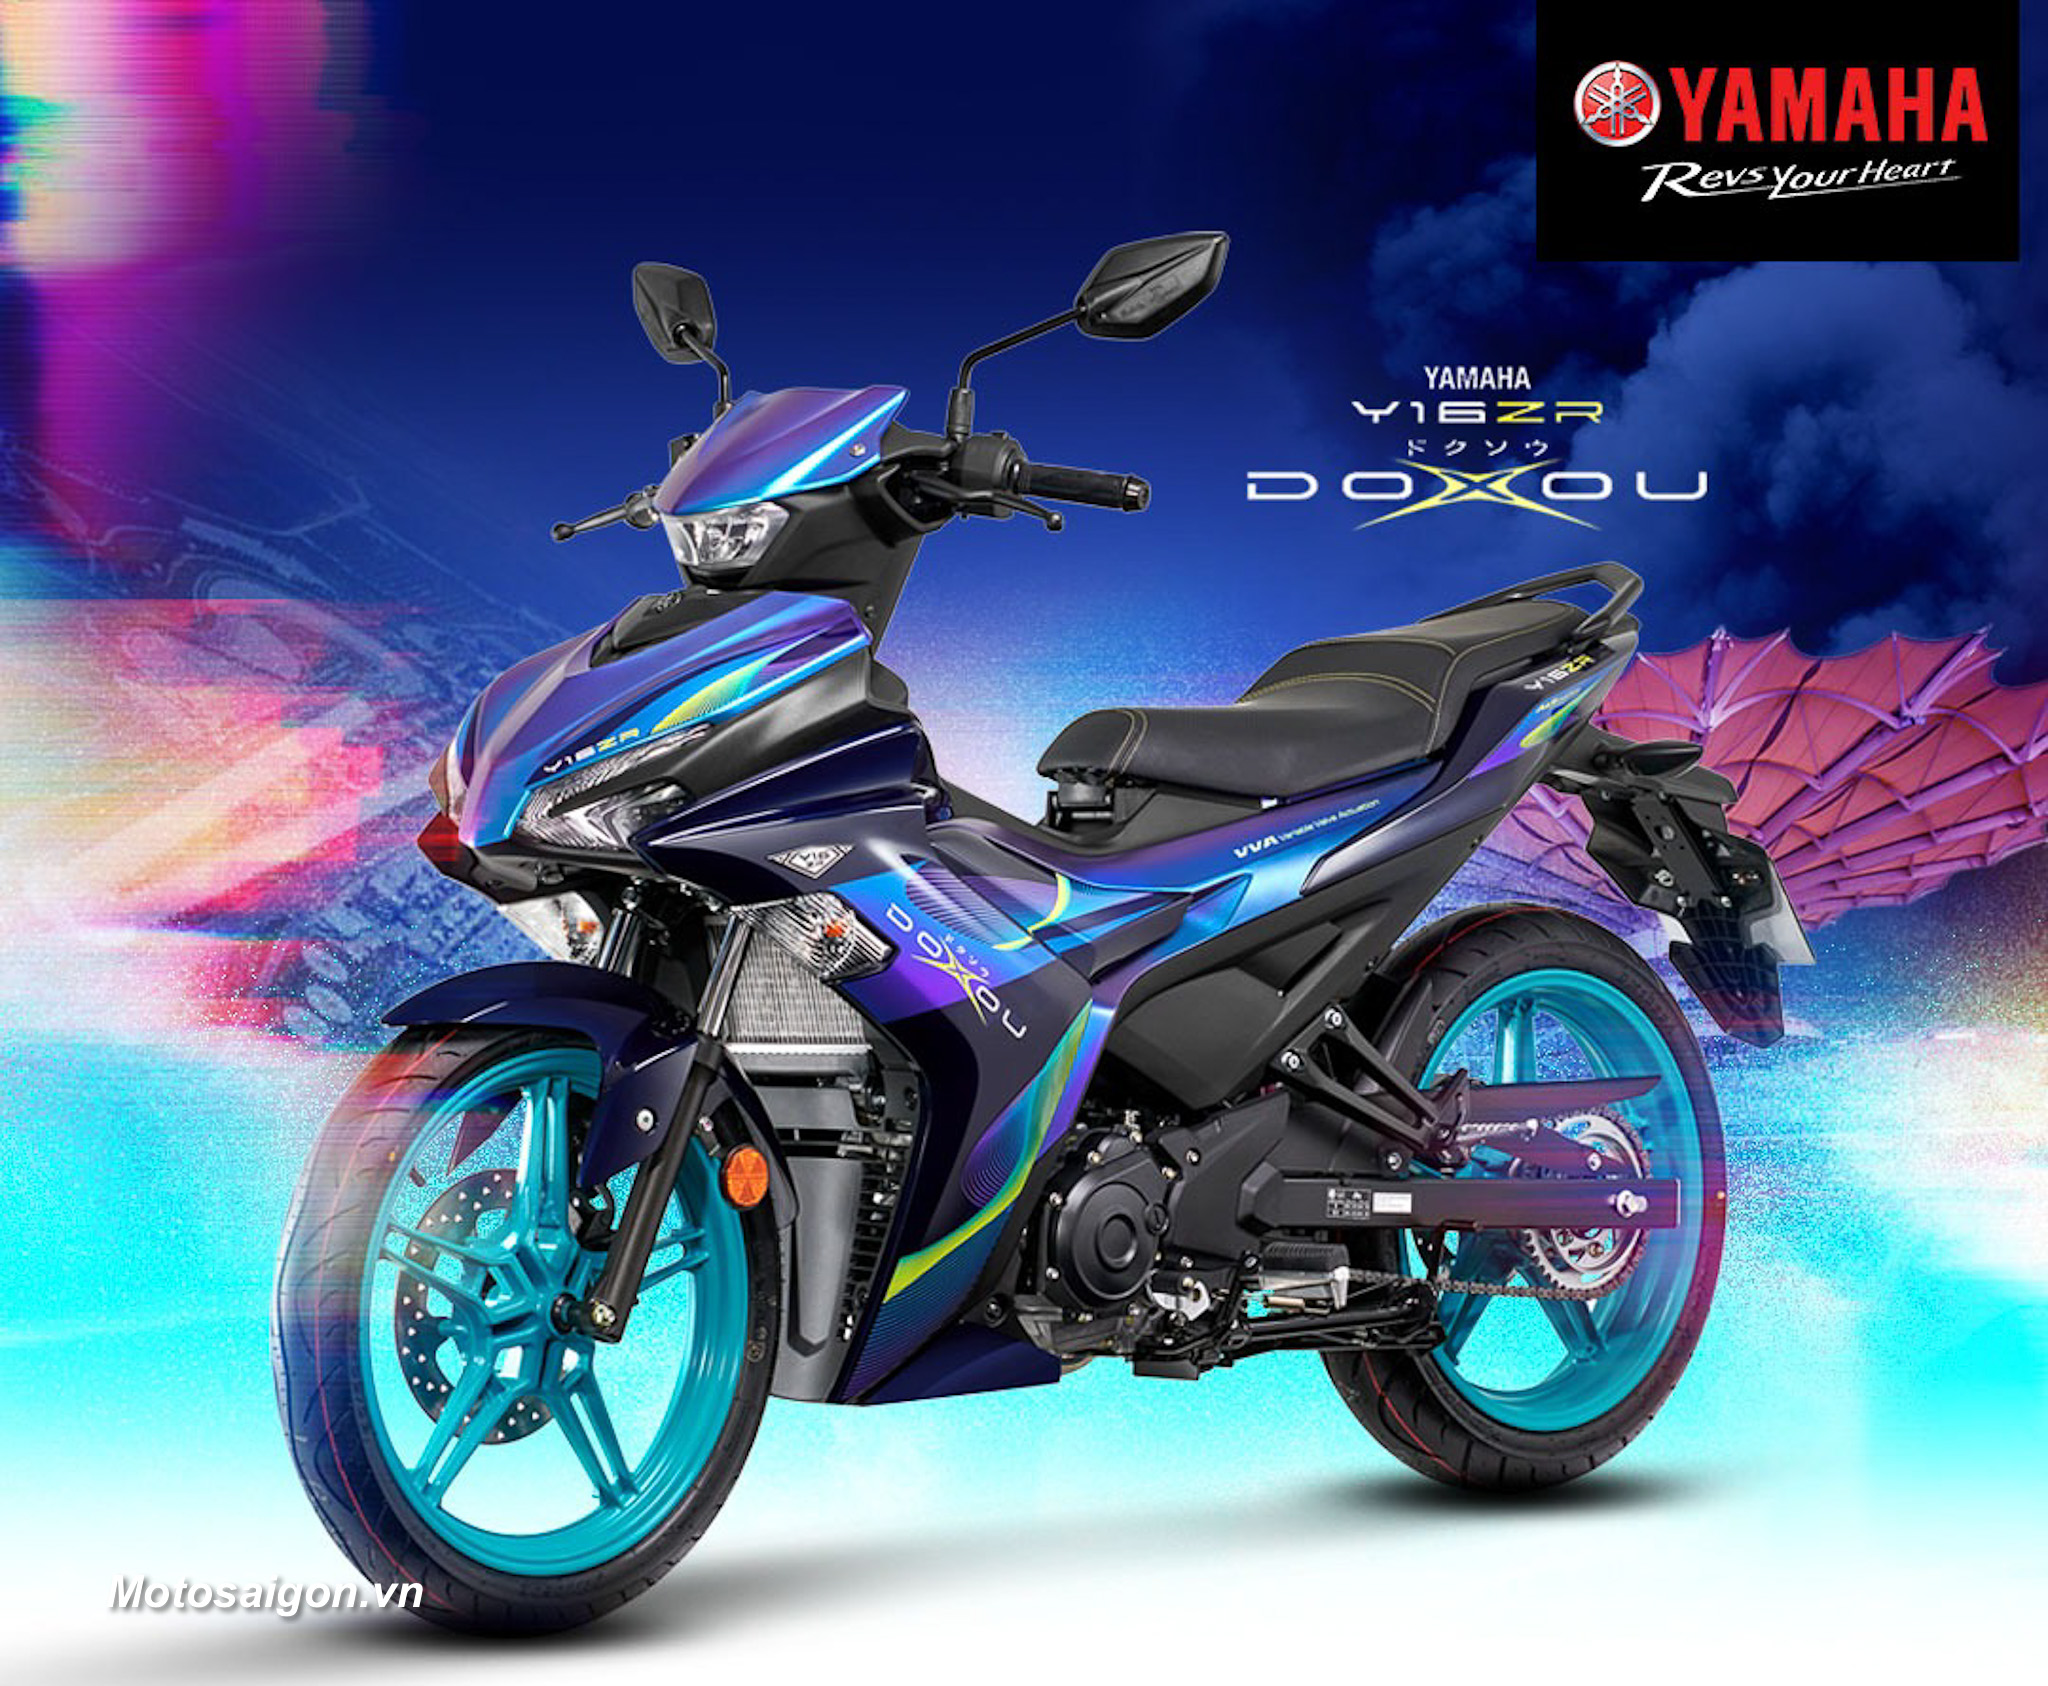 Yamaha Exciter 155 Doxou Tech Art đặc biệt màu xanh đẹp mắt